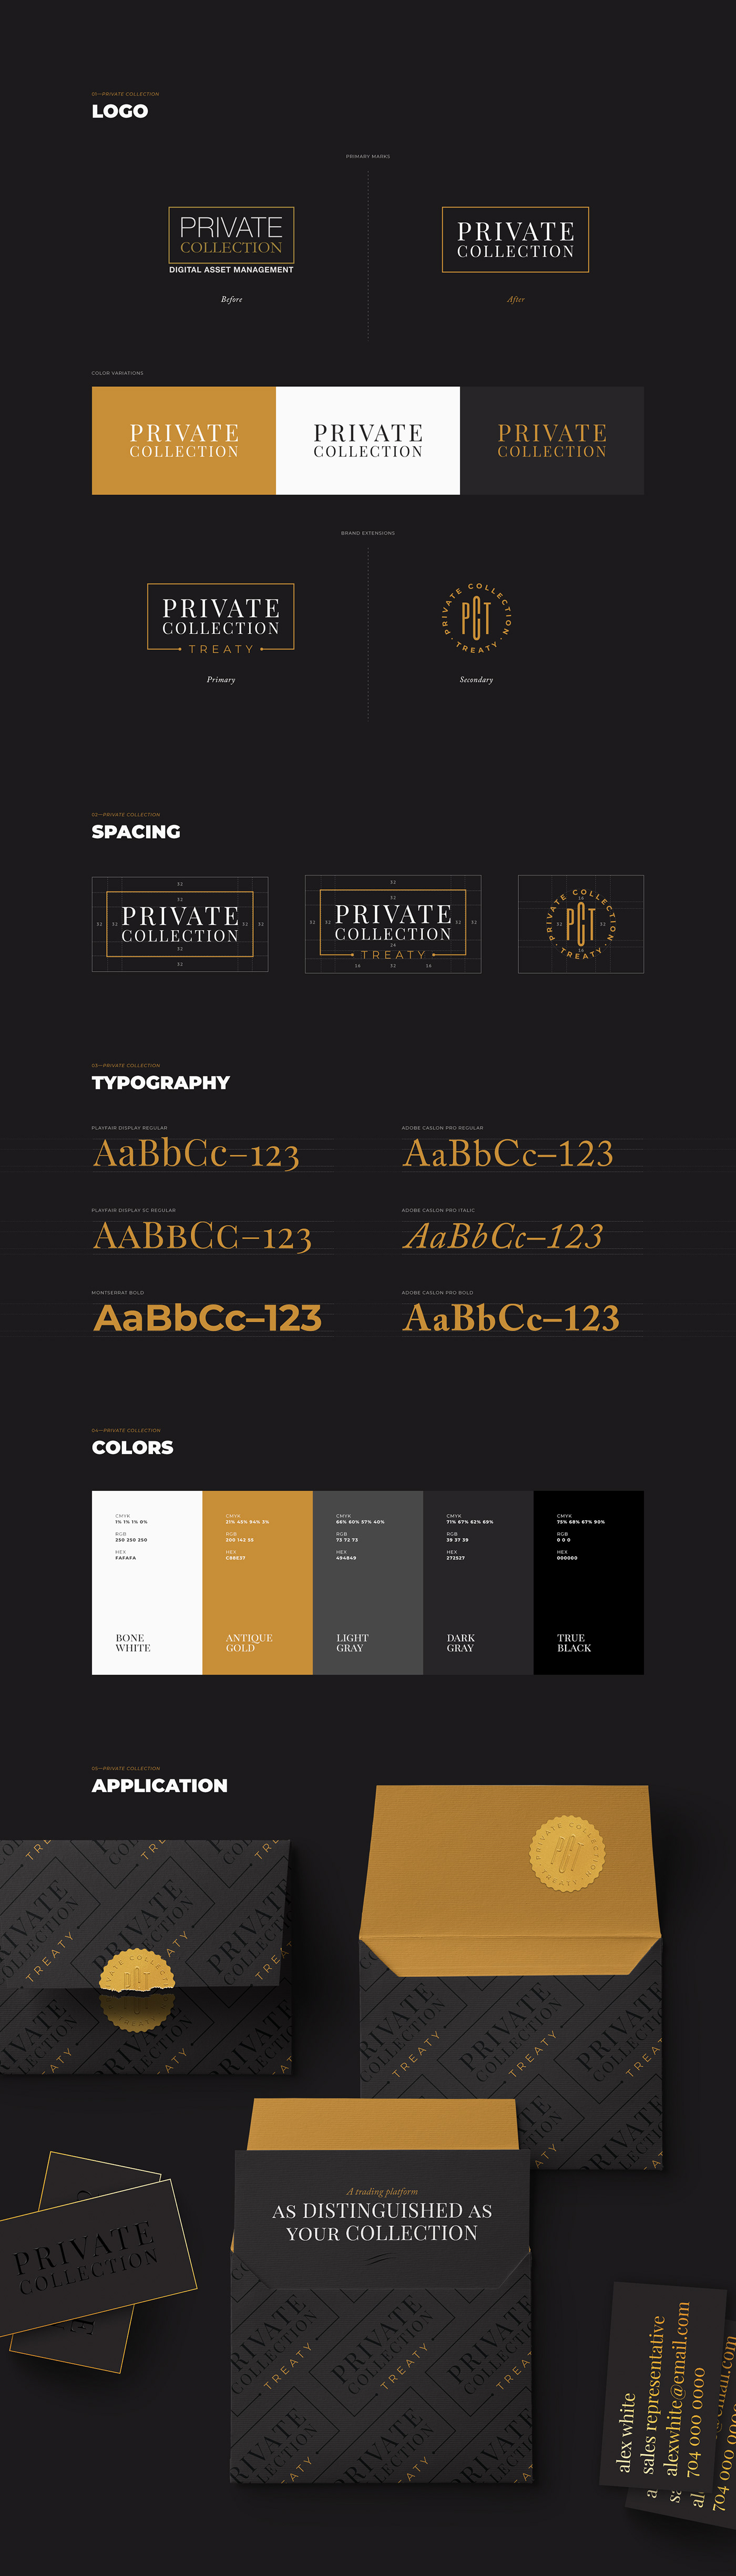 branding  graphic design  identity guideline redesign update print gold luxurious dark